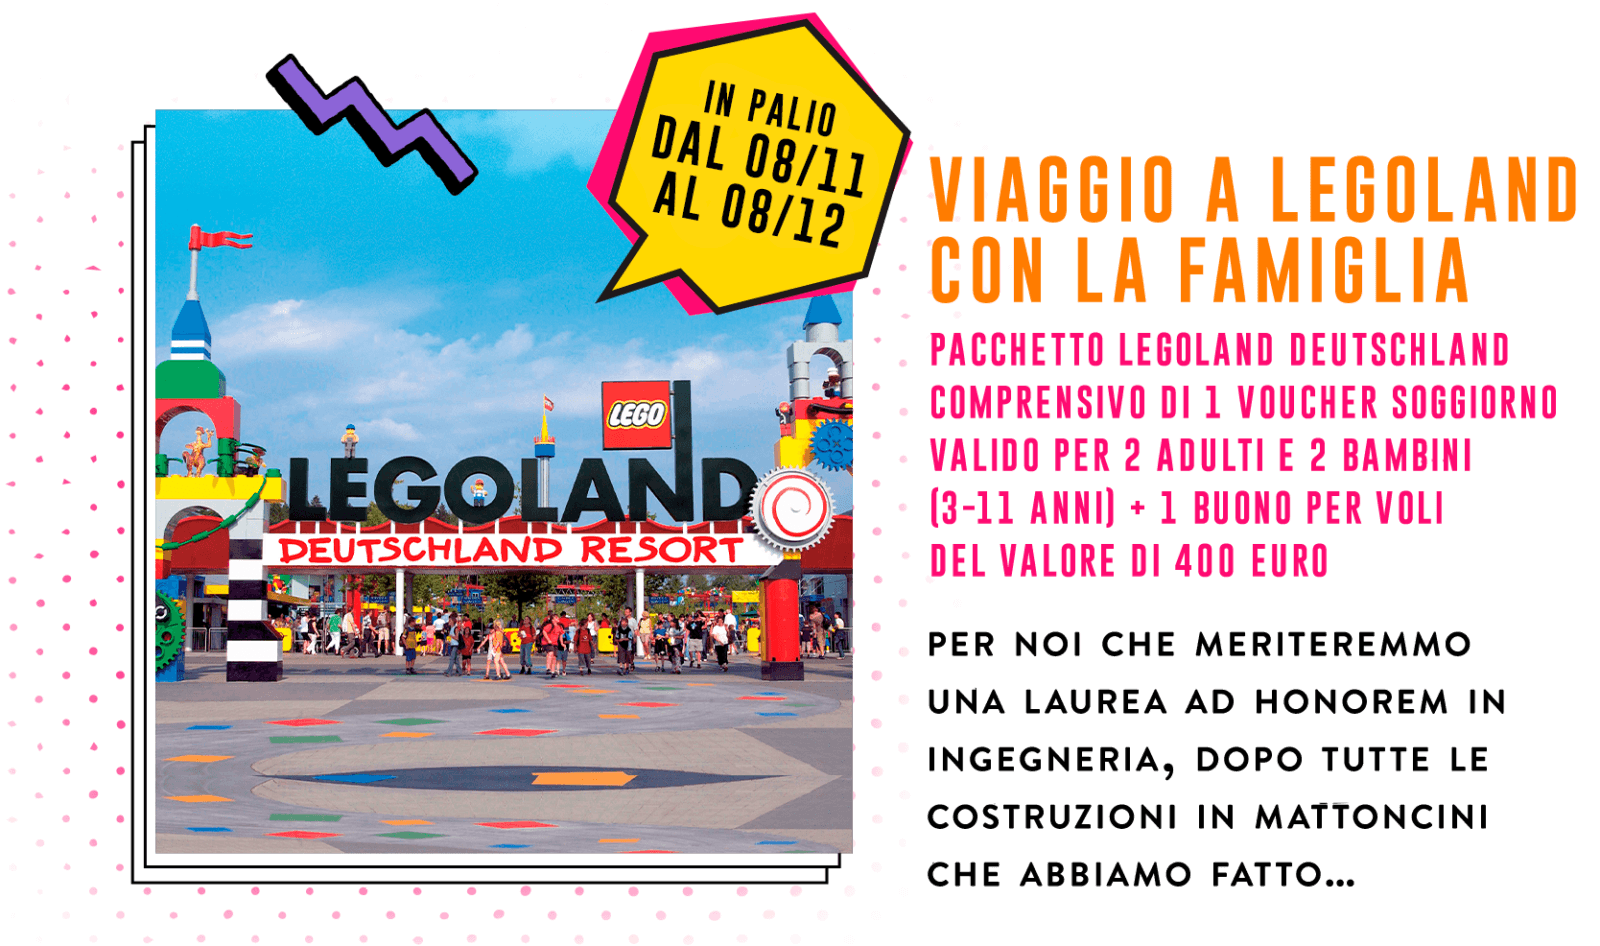 Concorso Plasmon biscotto "dei grandi": vinci premi Casio, Caran d’Ache, Polaroid, Smeg, Doniselli e viaggi a Legoland! 11